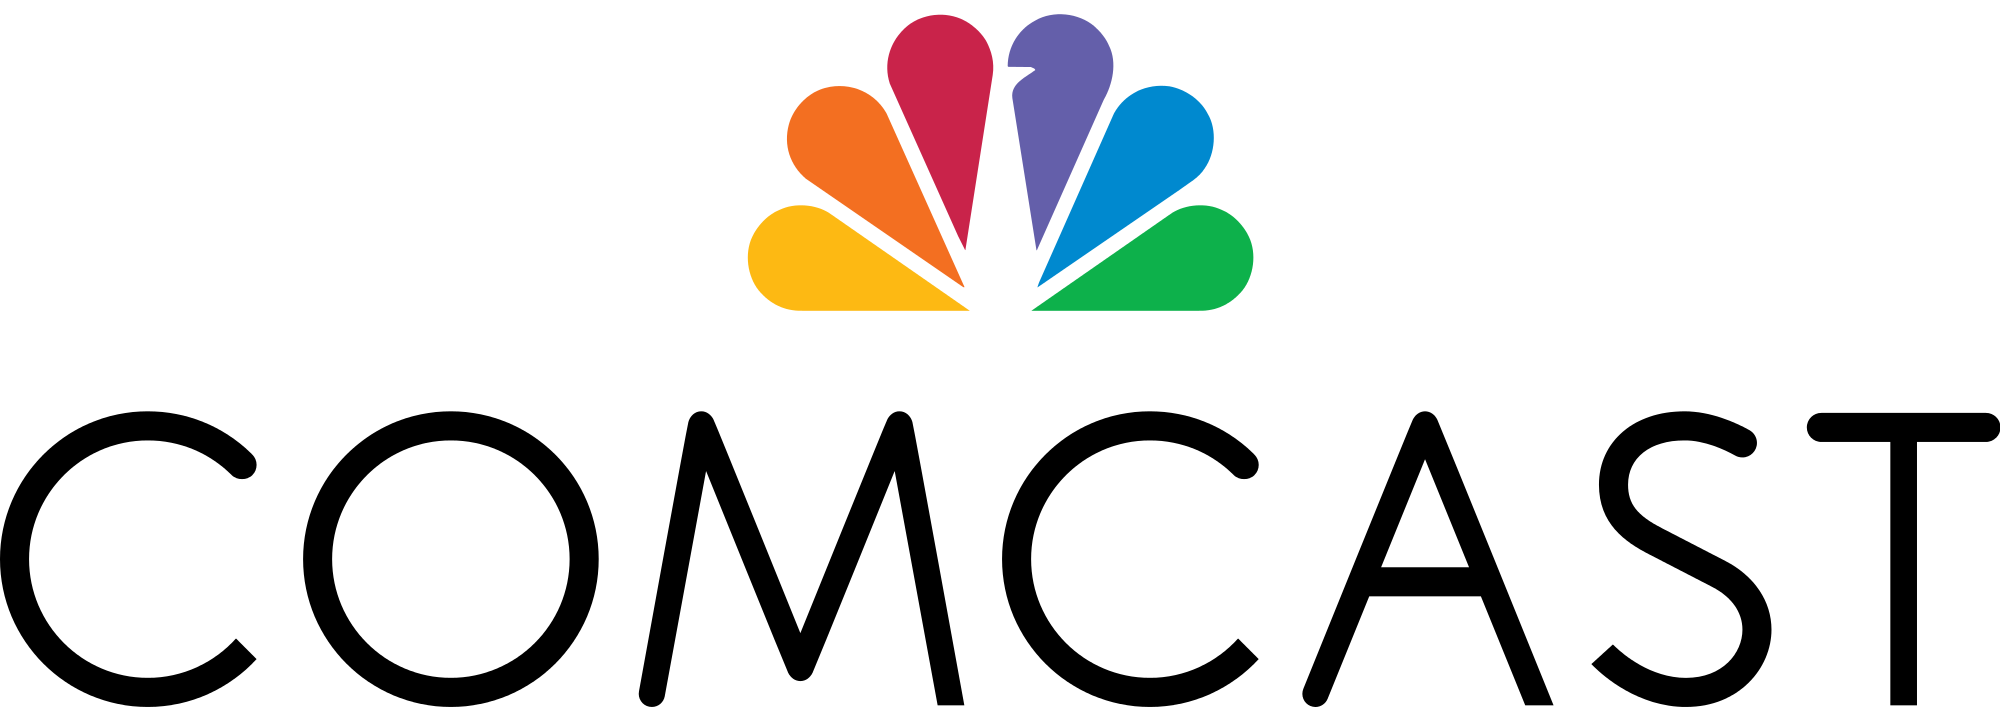 het logo van Comcast